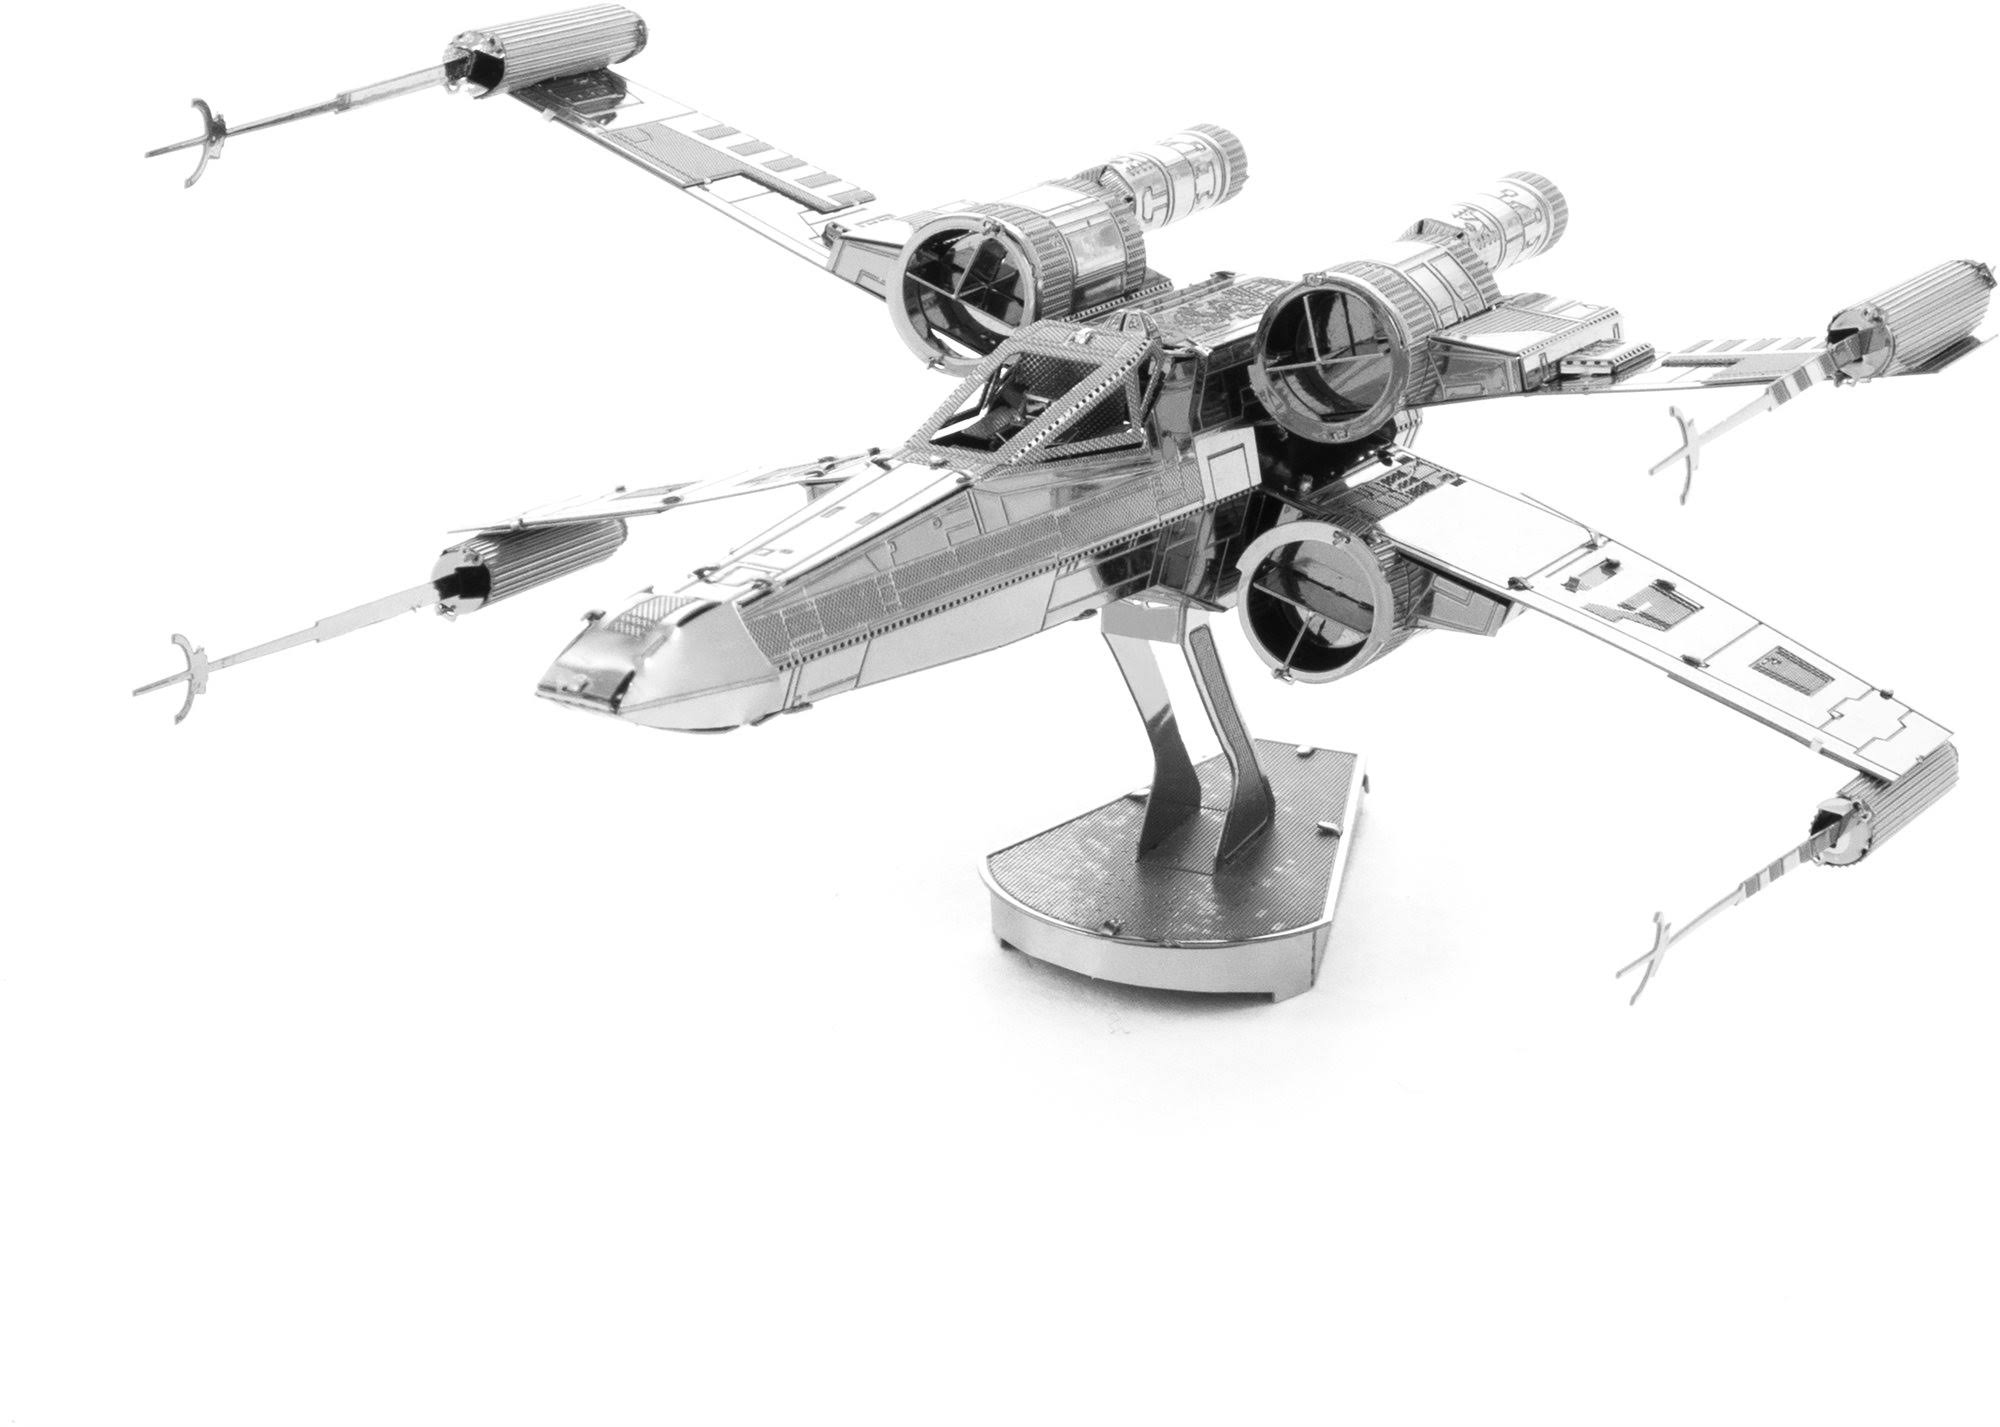 3D Metal Model Kit Star Wars - X-Wing